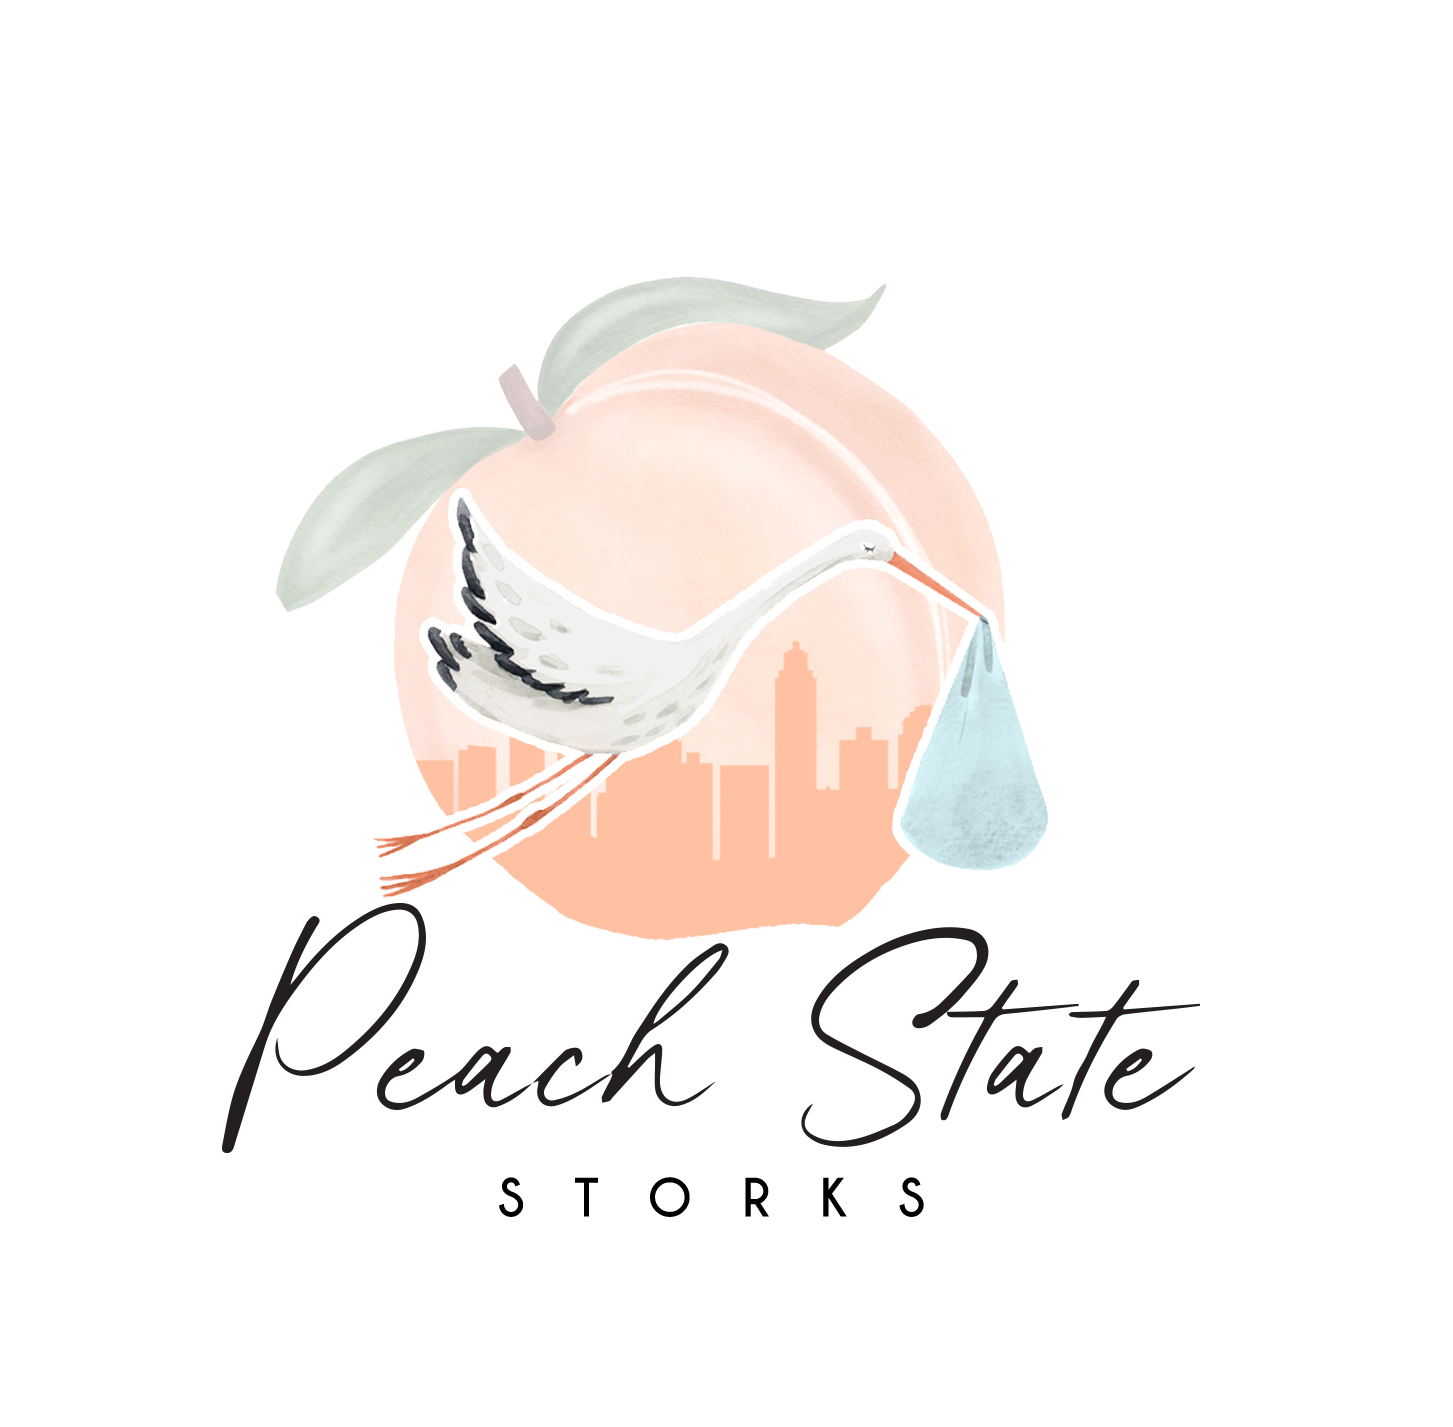 Peach State Storks : Logo